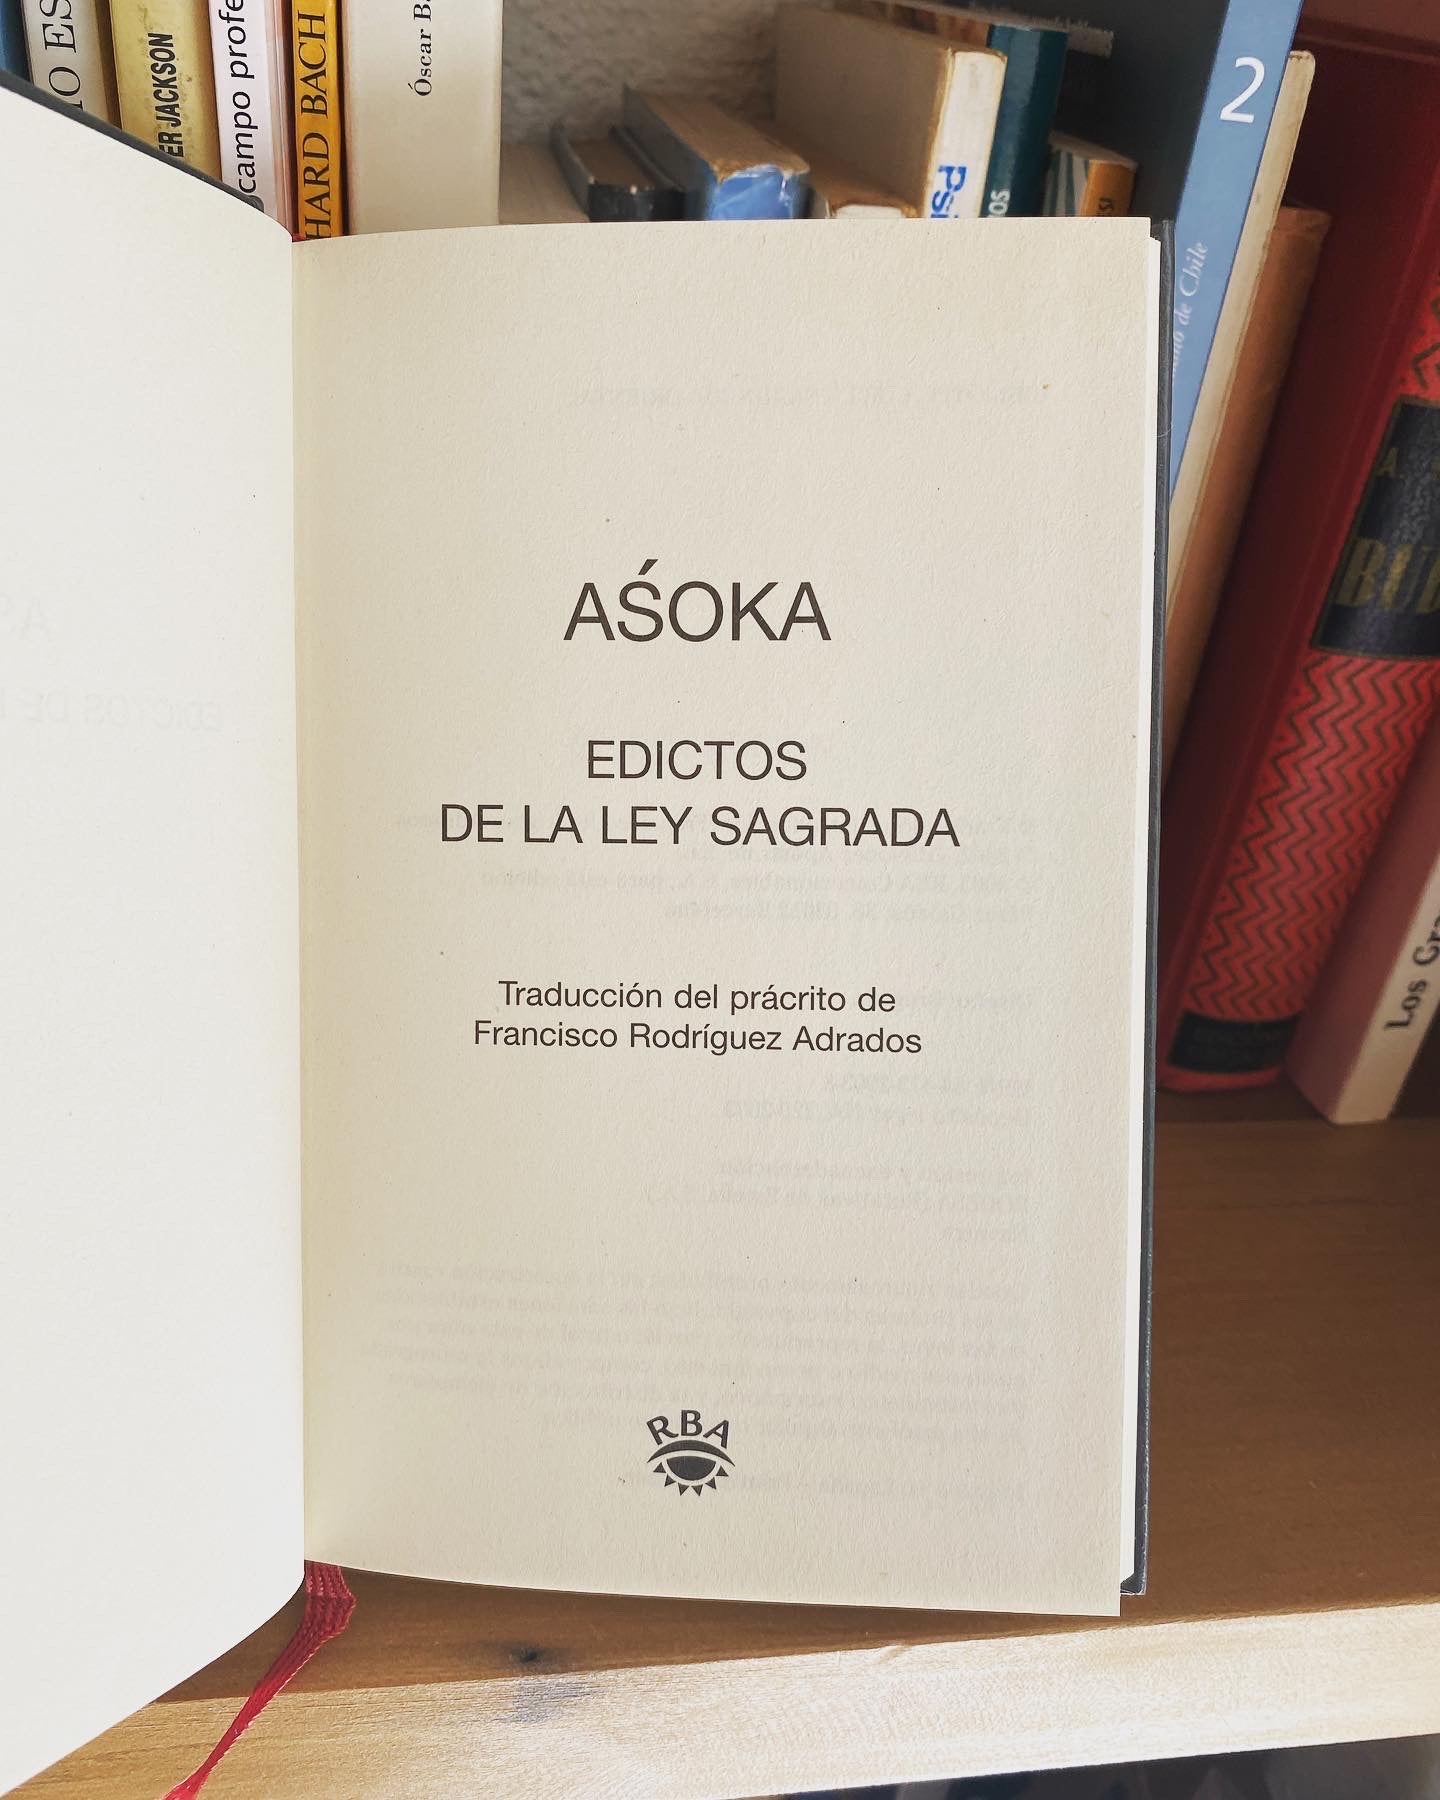 Asoka, Edictos de la ley Sagrada